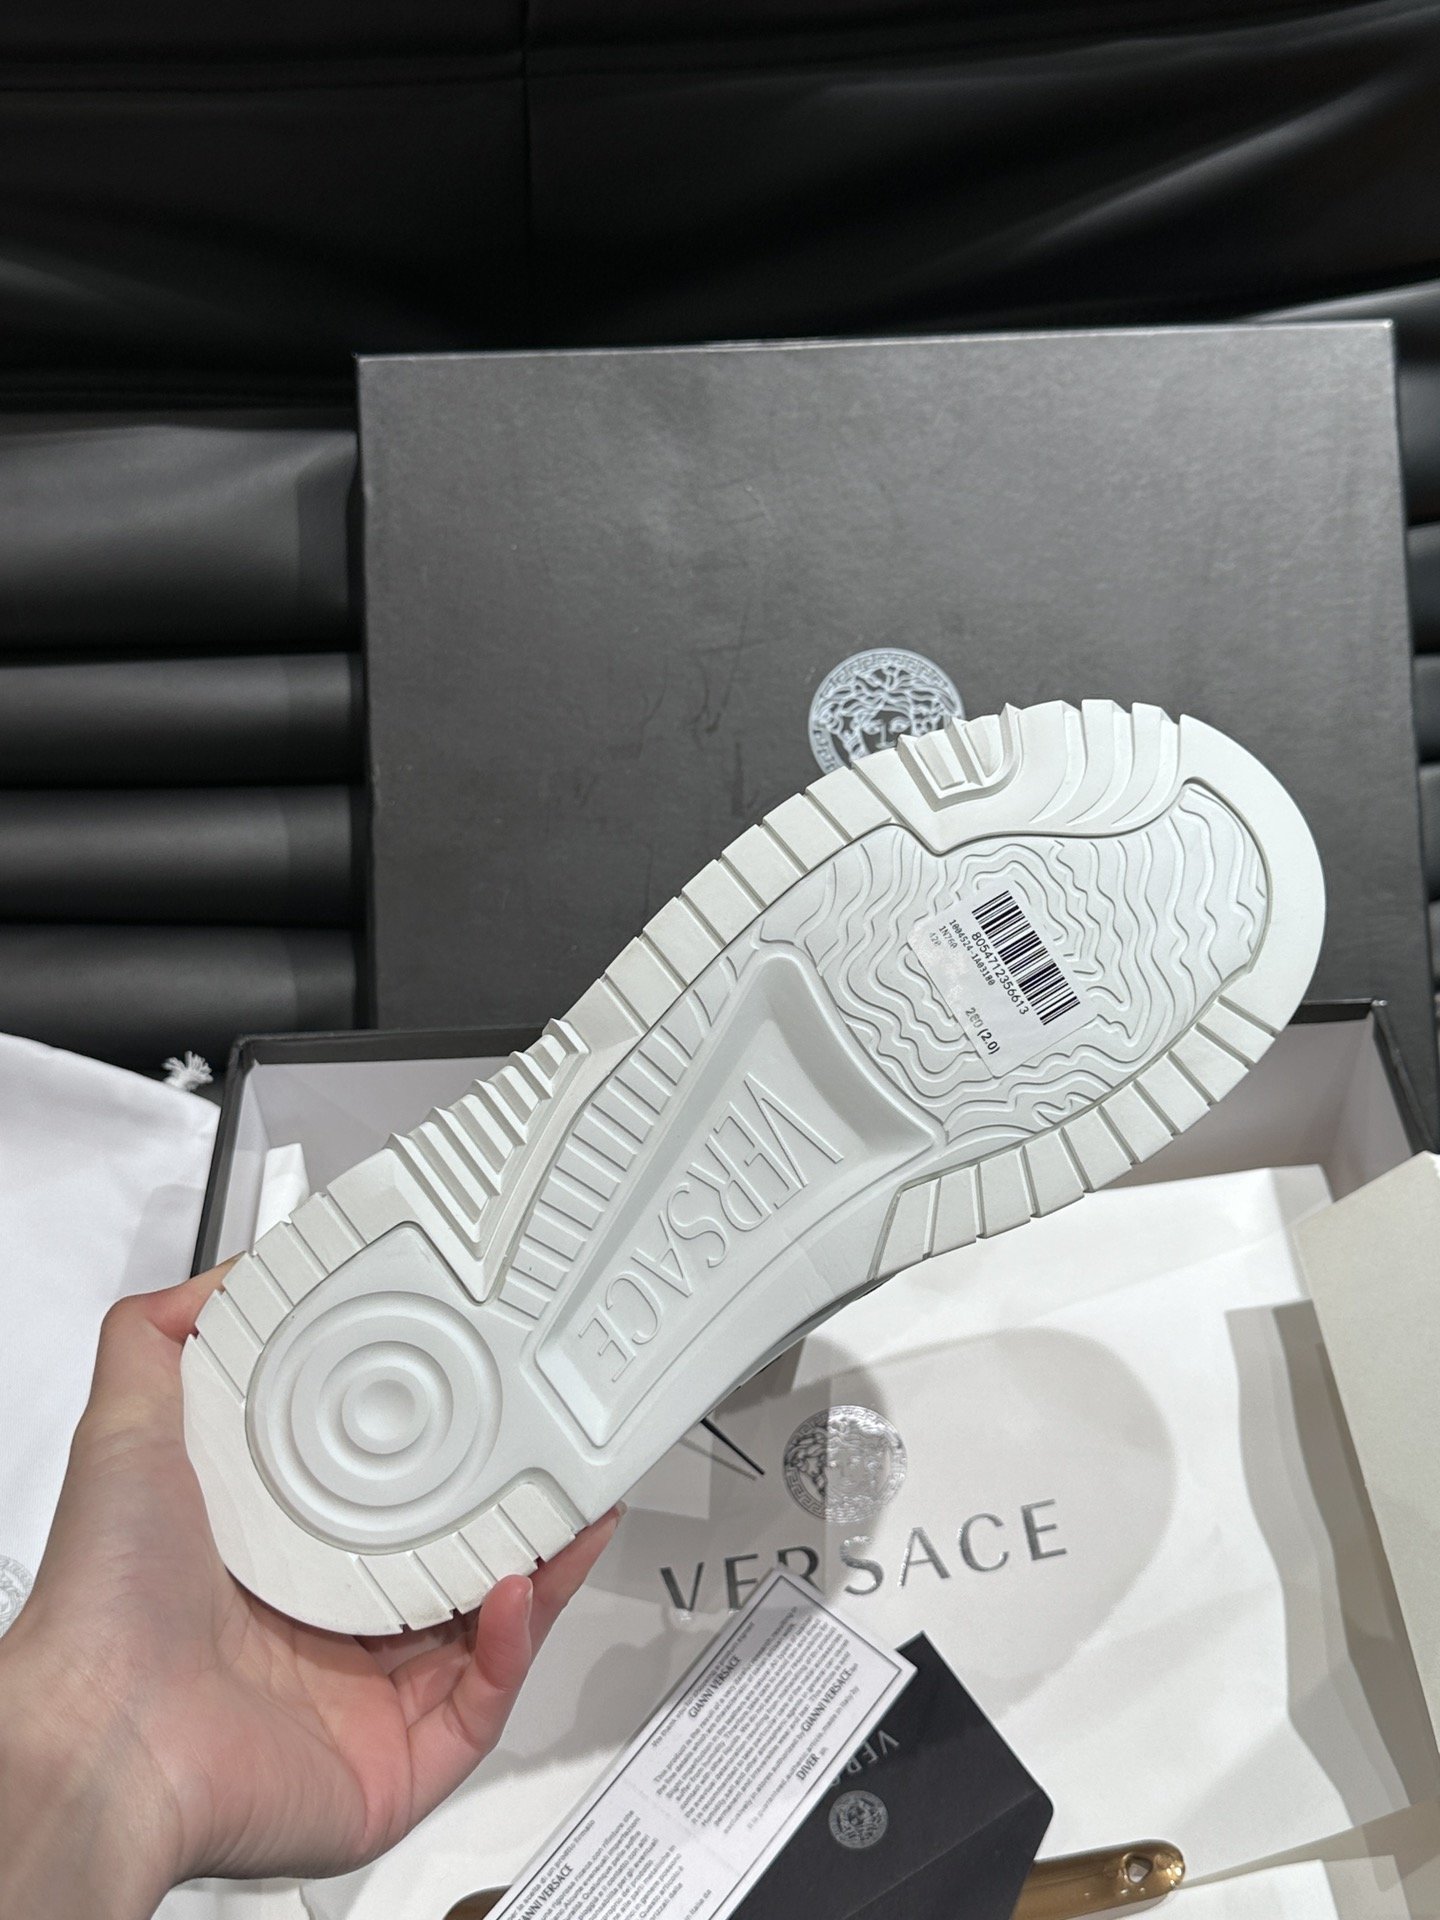 VersaceOdissea艺术感超强的飞船鞋整双鞋很具备结构感和线条感干净利落也能让造型充满很强的视觉